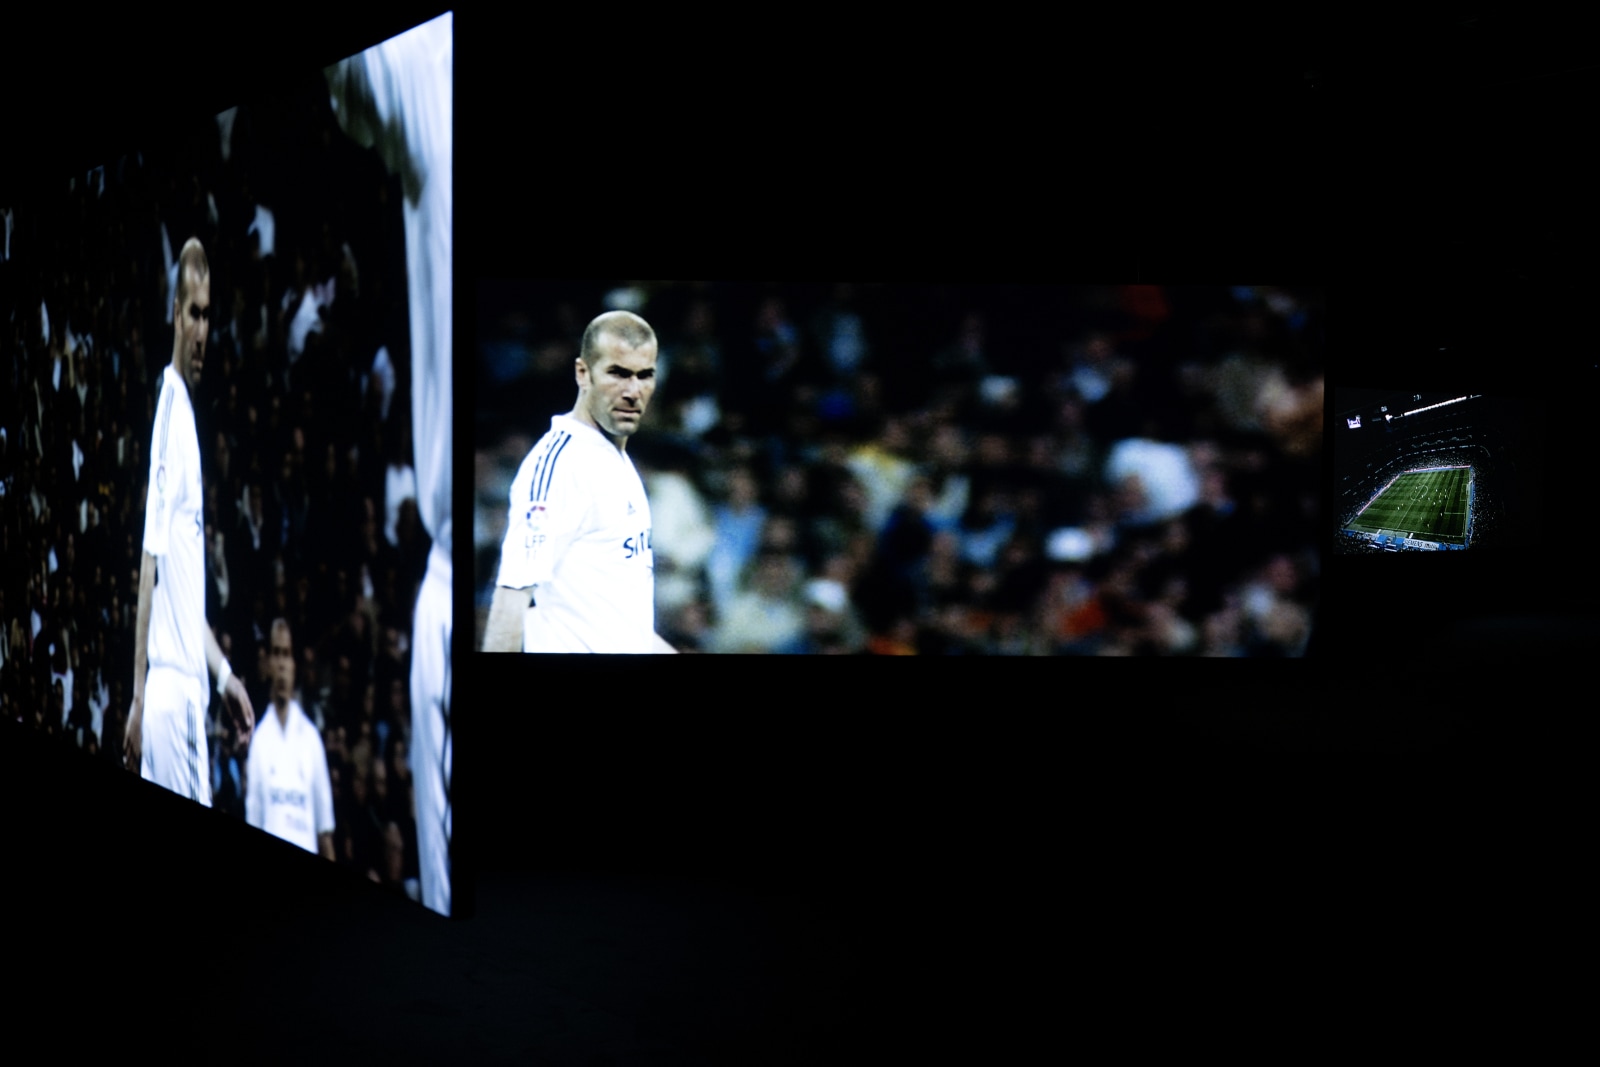 <div class="image_caption_container"><div class="image_caption"><p>Exhibition view: Douglas Gordon & Philippe Parreno, <strong>Zidane: A 21st Century Portrait</strong>, Philharmonie de Paris, 2023. Photo © Joachim Bertrand</p></div></div>